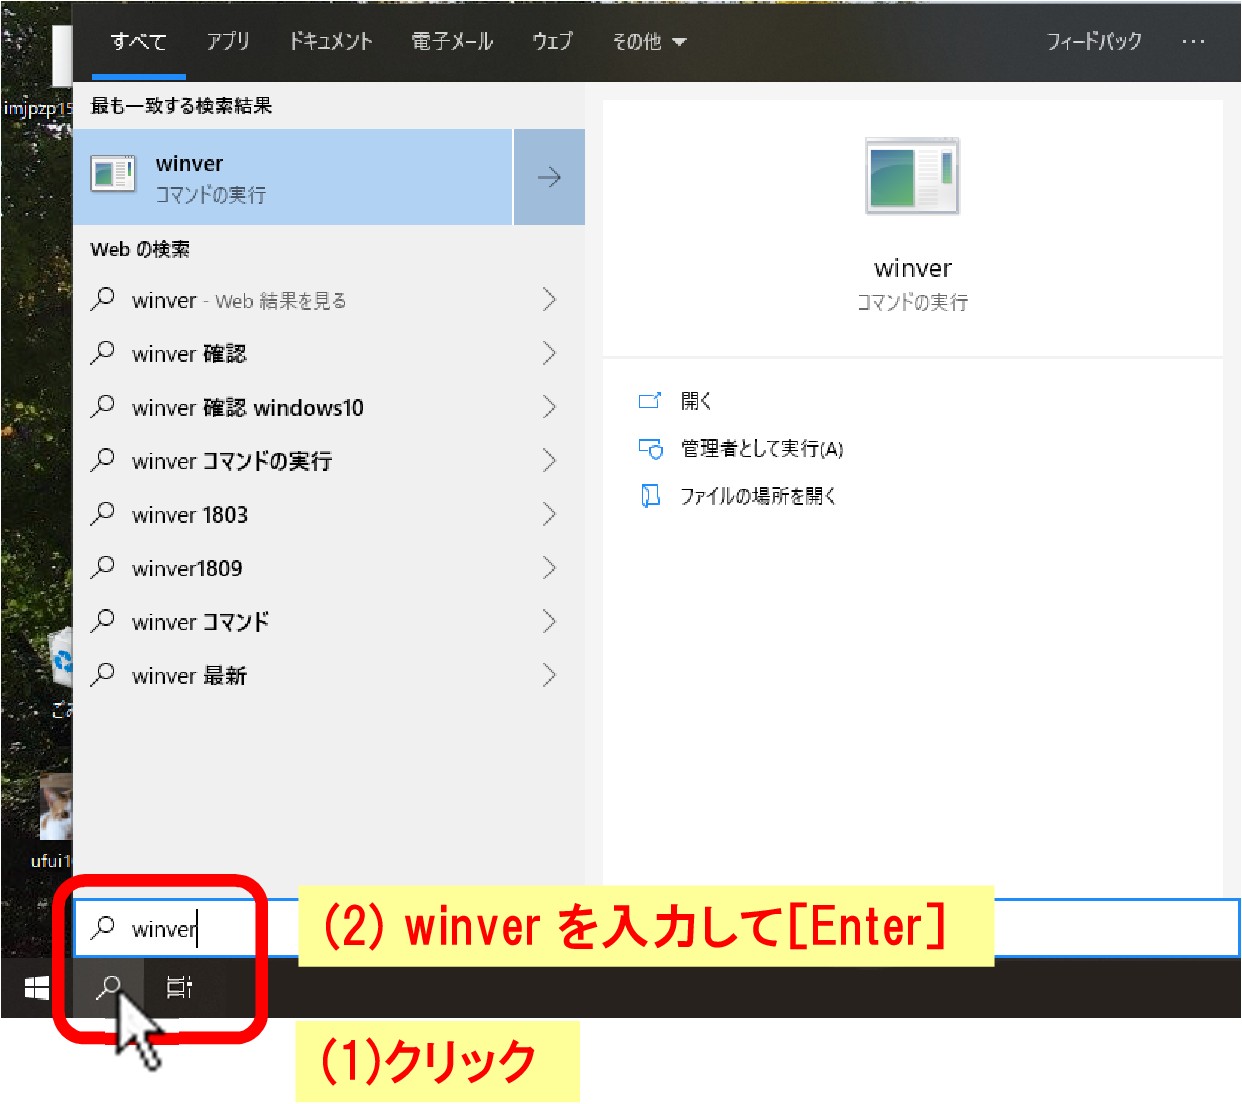 (1)[スタートボタン]をクリック、「Windows システムツール」をクリック、(3)「ファイル名を指定して実行」をクリックします。